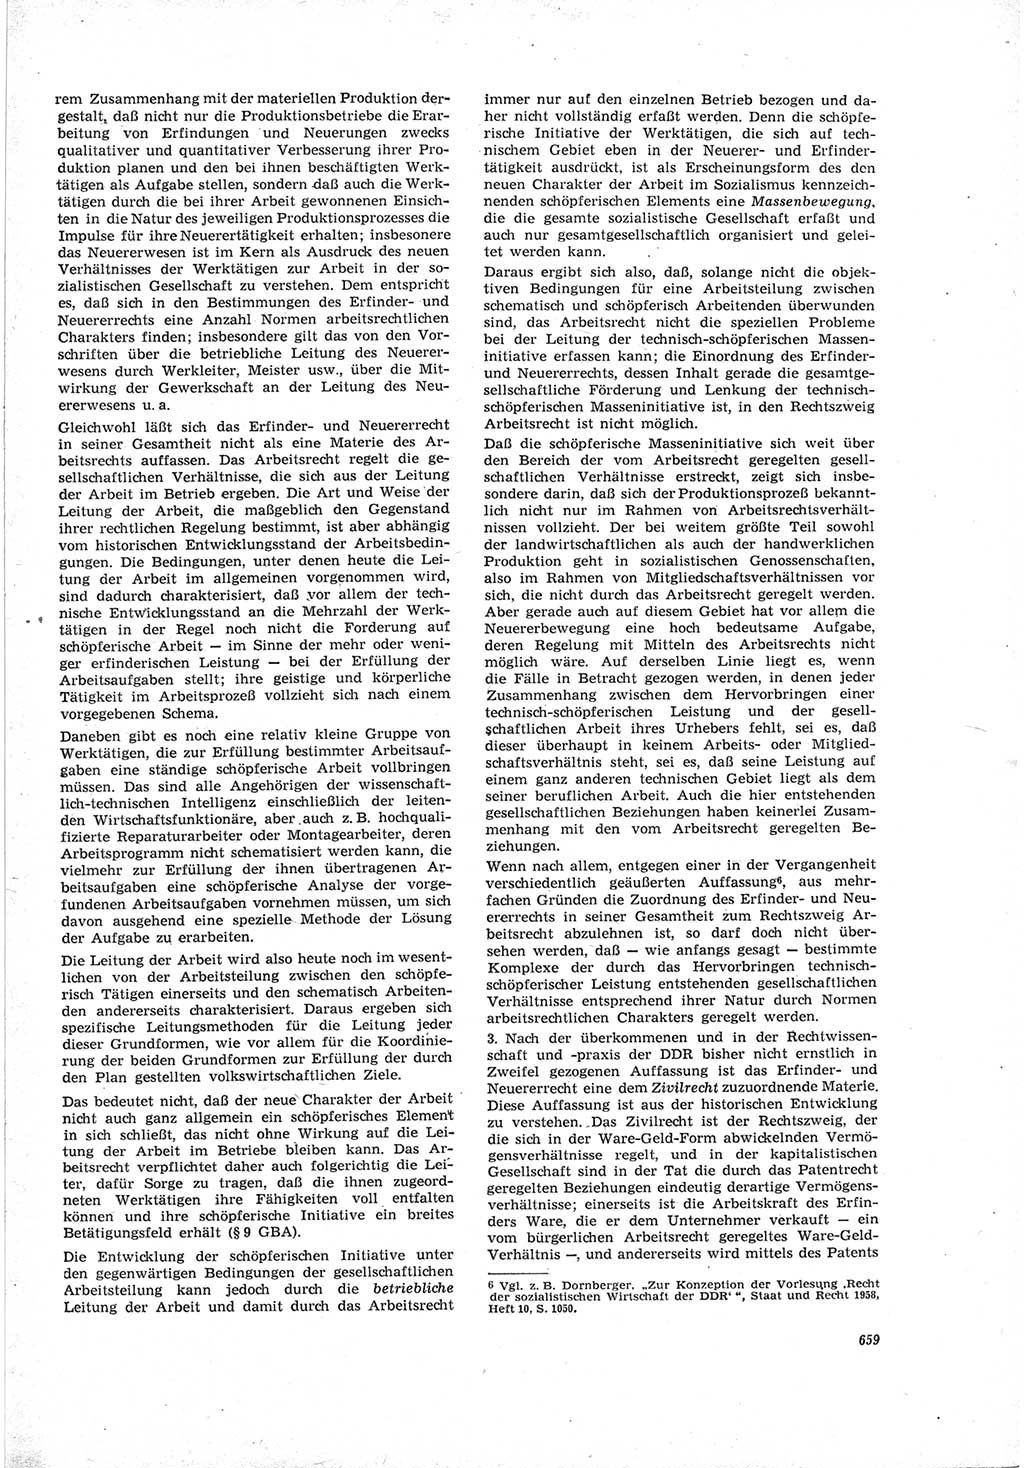 Neue Justiz (NJ), Zeitschrift für Recht und Rechtswissenschaft [Deutsche Demokratische Republik (DDR)], 19. Jahrgang 1965, Seite 659 (NJ DDR 1965, S. 659)